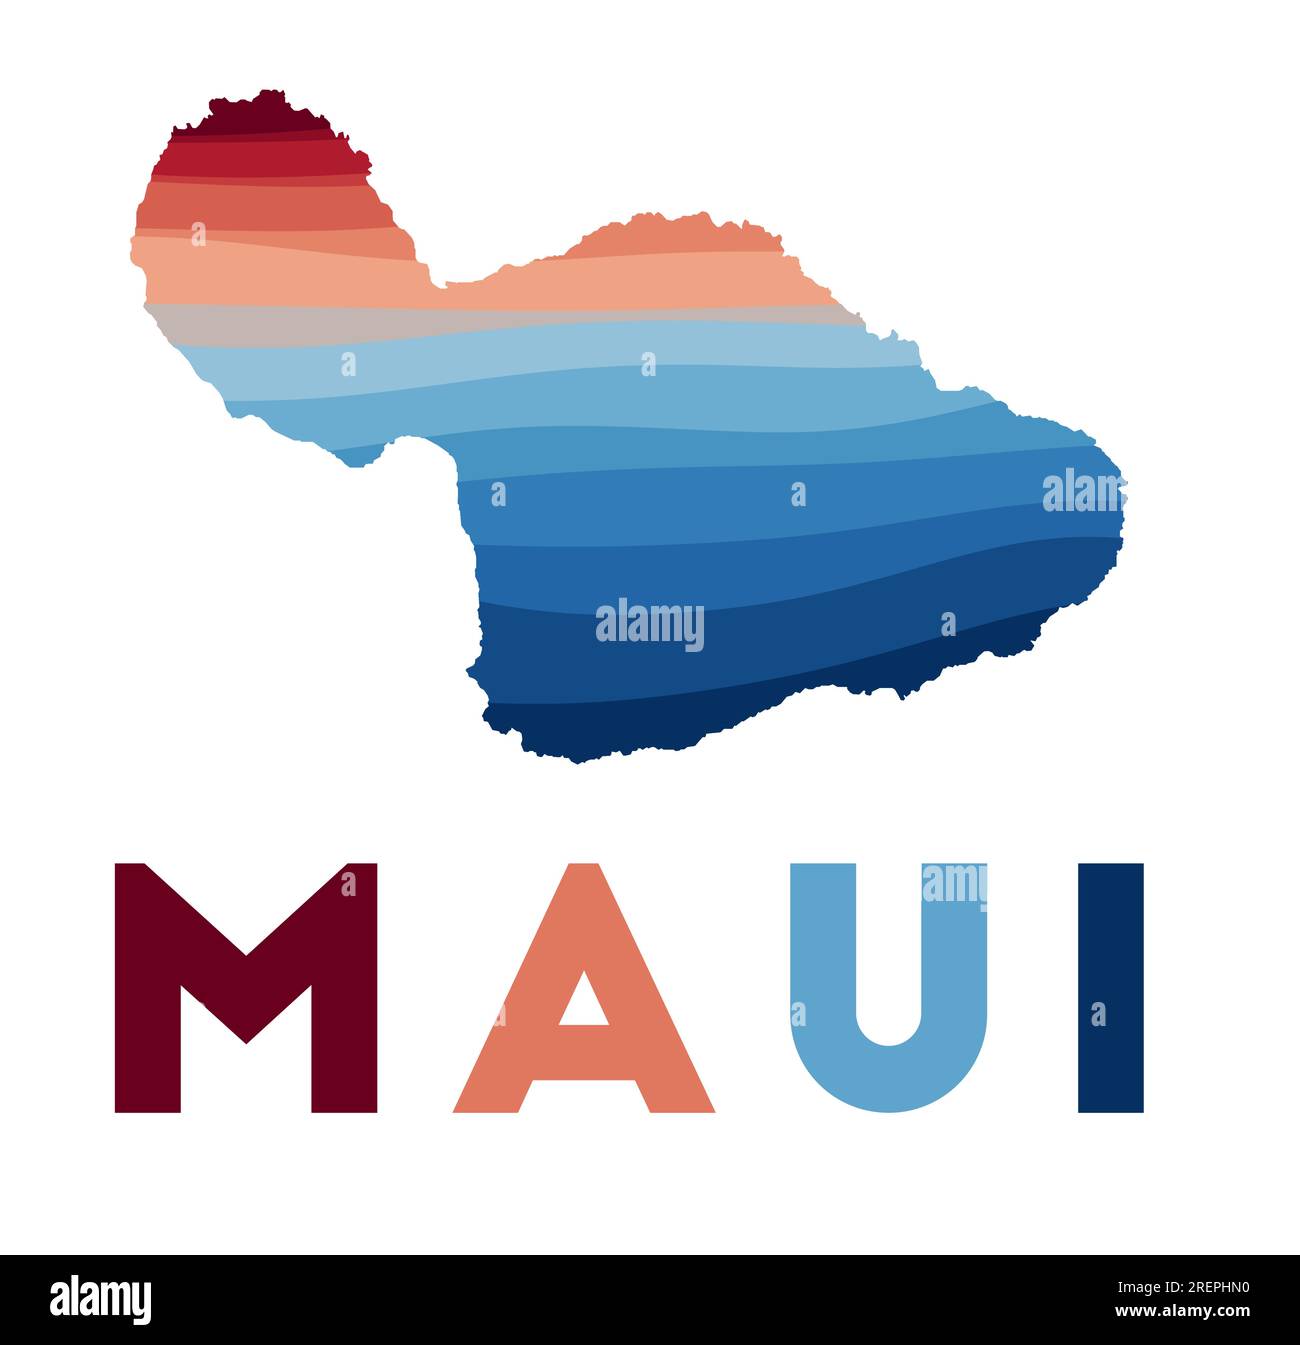 Maui-Karte. Karte der Insel mit wunderschönen geometrischen Wellen in rot-blauen Farben. Lebendige Maui-Form. Vektordarstellung. Stock Vektor